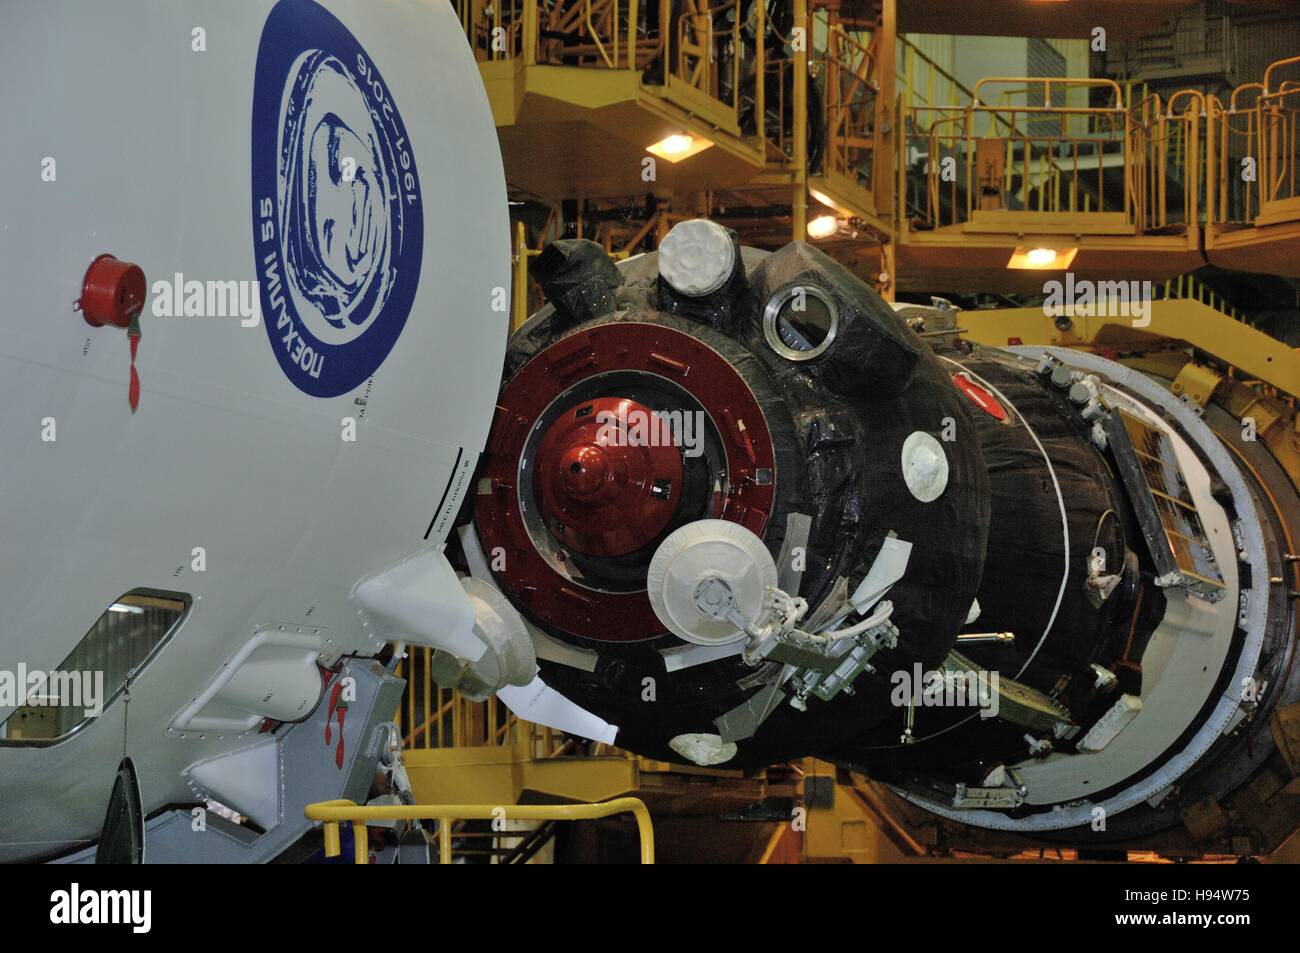 La nave espacial ruso Soyuz MS-03 está preparado para el encapsulamiento de la expedición de la Estación Espacial Internacional de la NASA misión 50-51 en el cosmódromo de Baikonur Integration Facility, el 9 de noviembre de 2016 en Baikonur, Kazajstán. Foto de stock